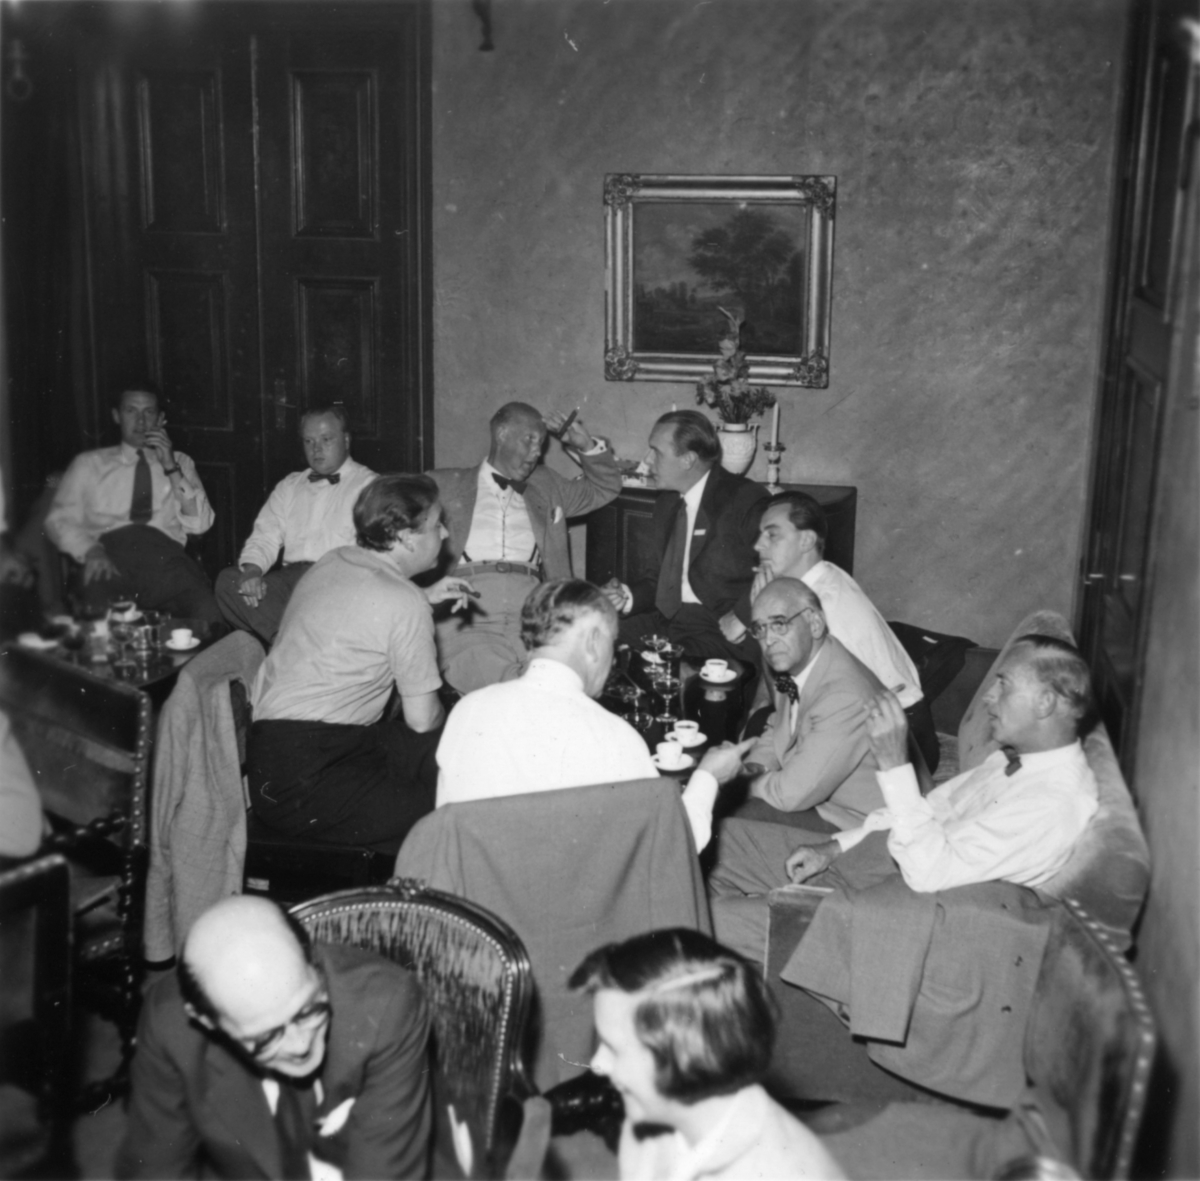 Reportage från pressvisningen den 29/8 1955.
Presschef Håkan Törnqvist, försäljningschef Torsten Henriksson, Sven Olsson.